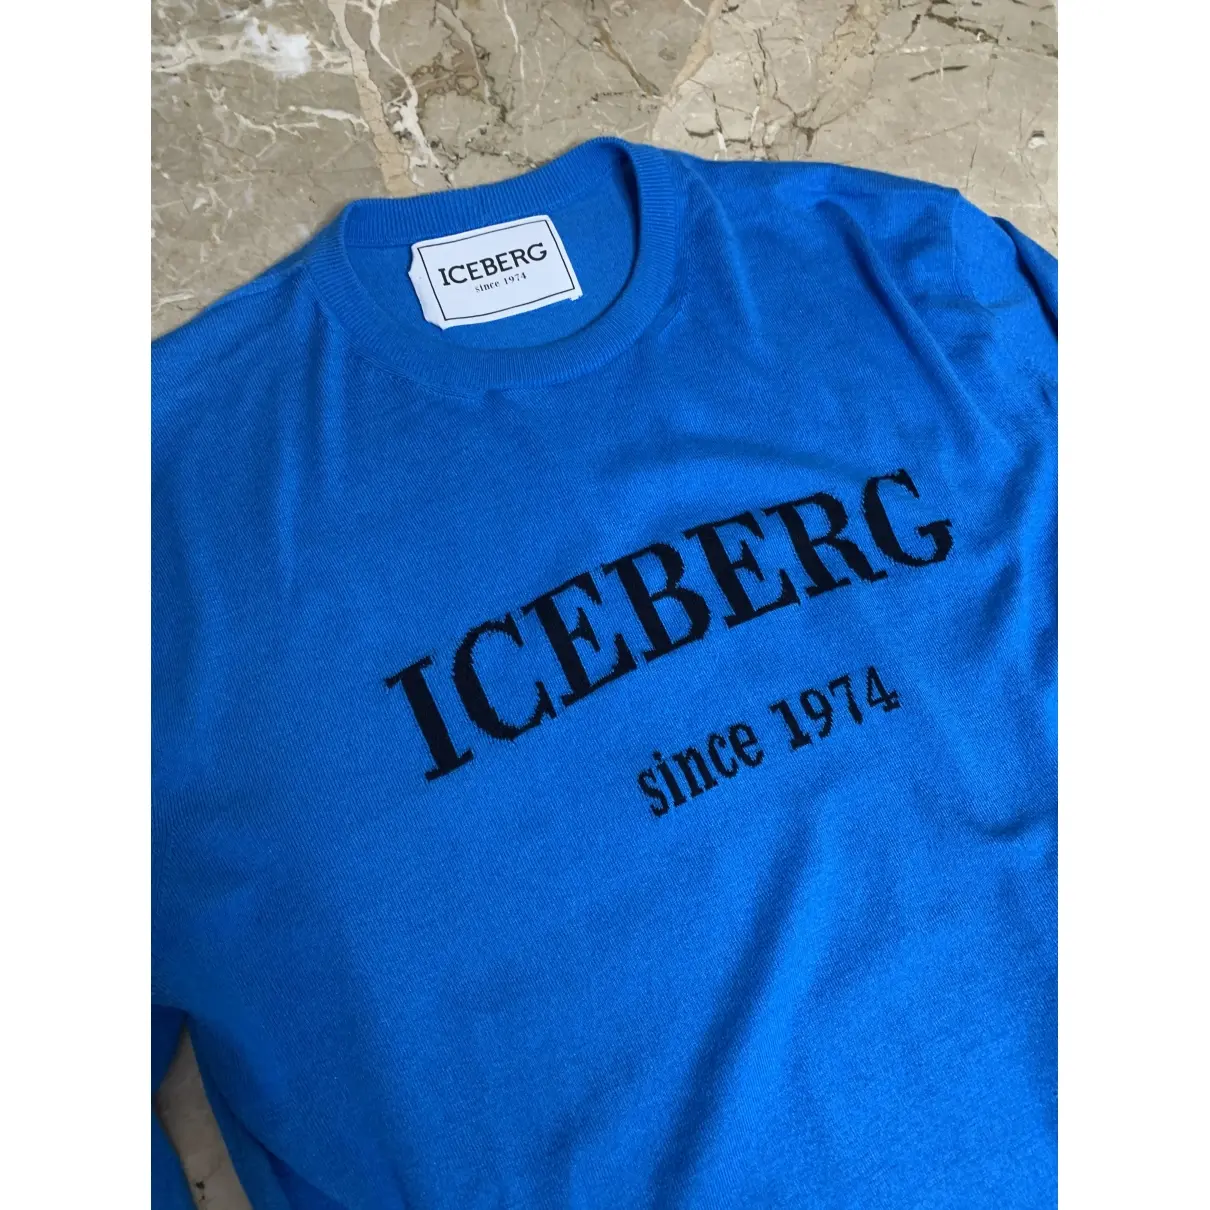 Iceberg Pull for sale